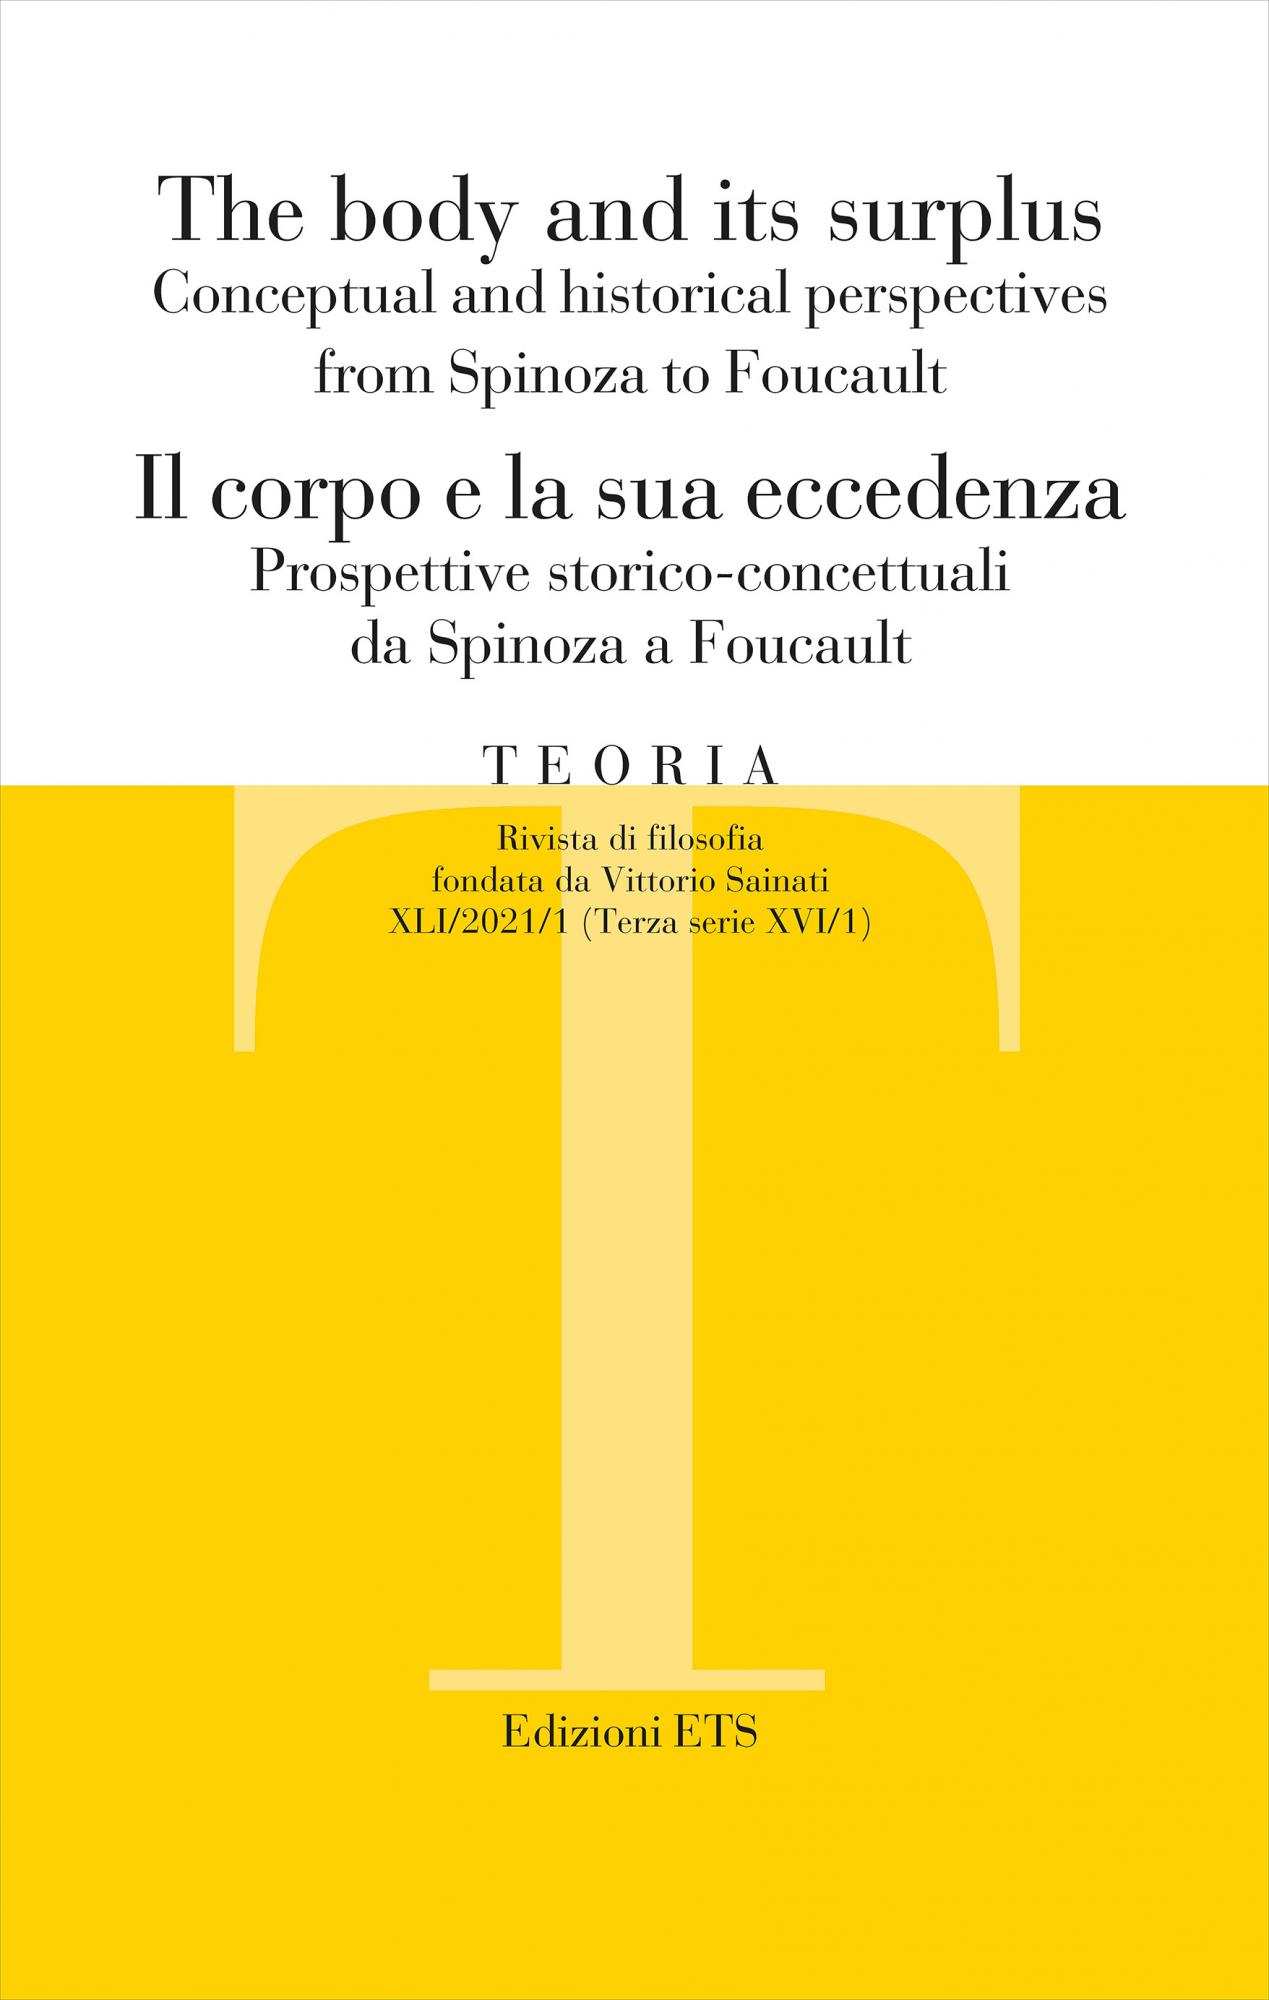 Teoria 2021-1.The body and its surplus Conceptual and historical perspectives from Spinoza to Foucault Il corpo e la sua eccedenza Prospettive storico-concettuali da Spinoza a Foucault